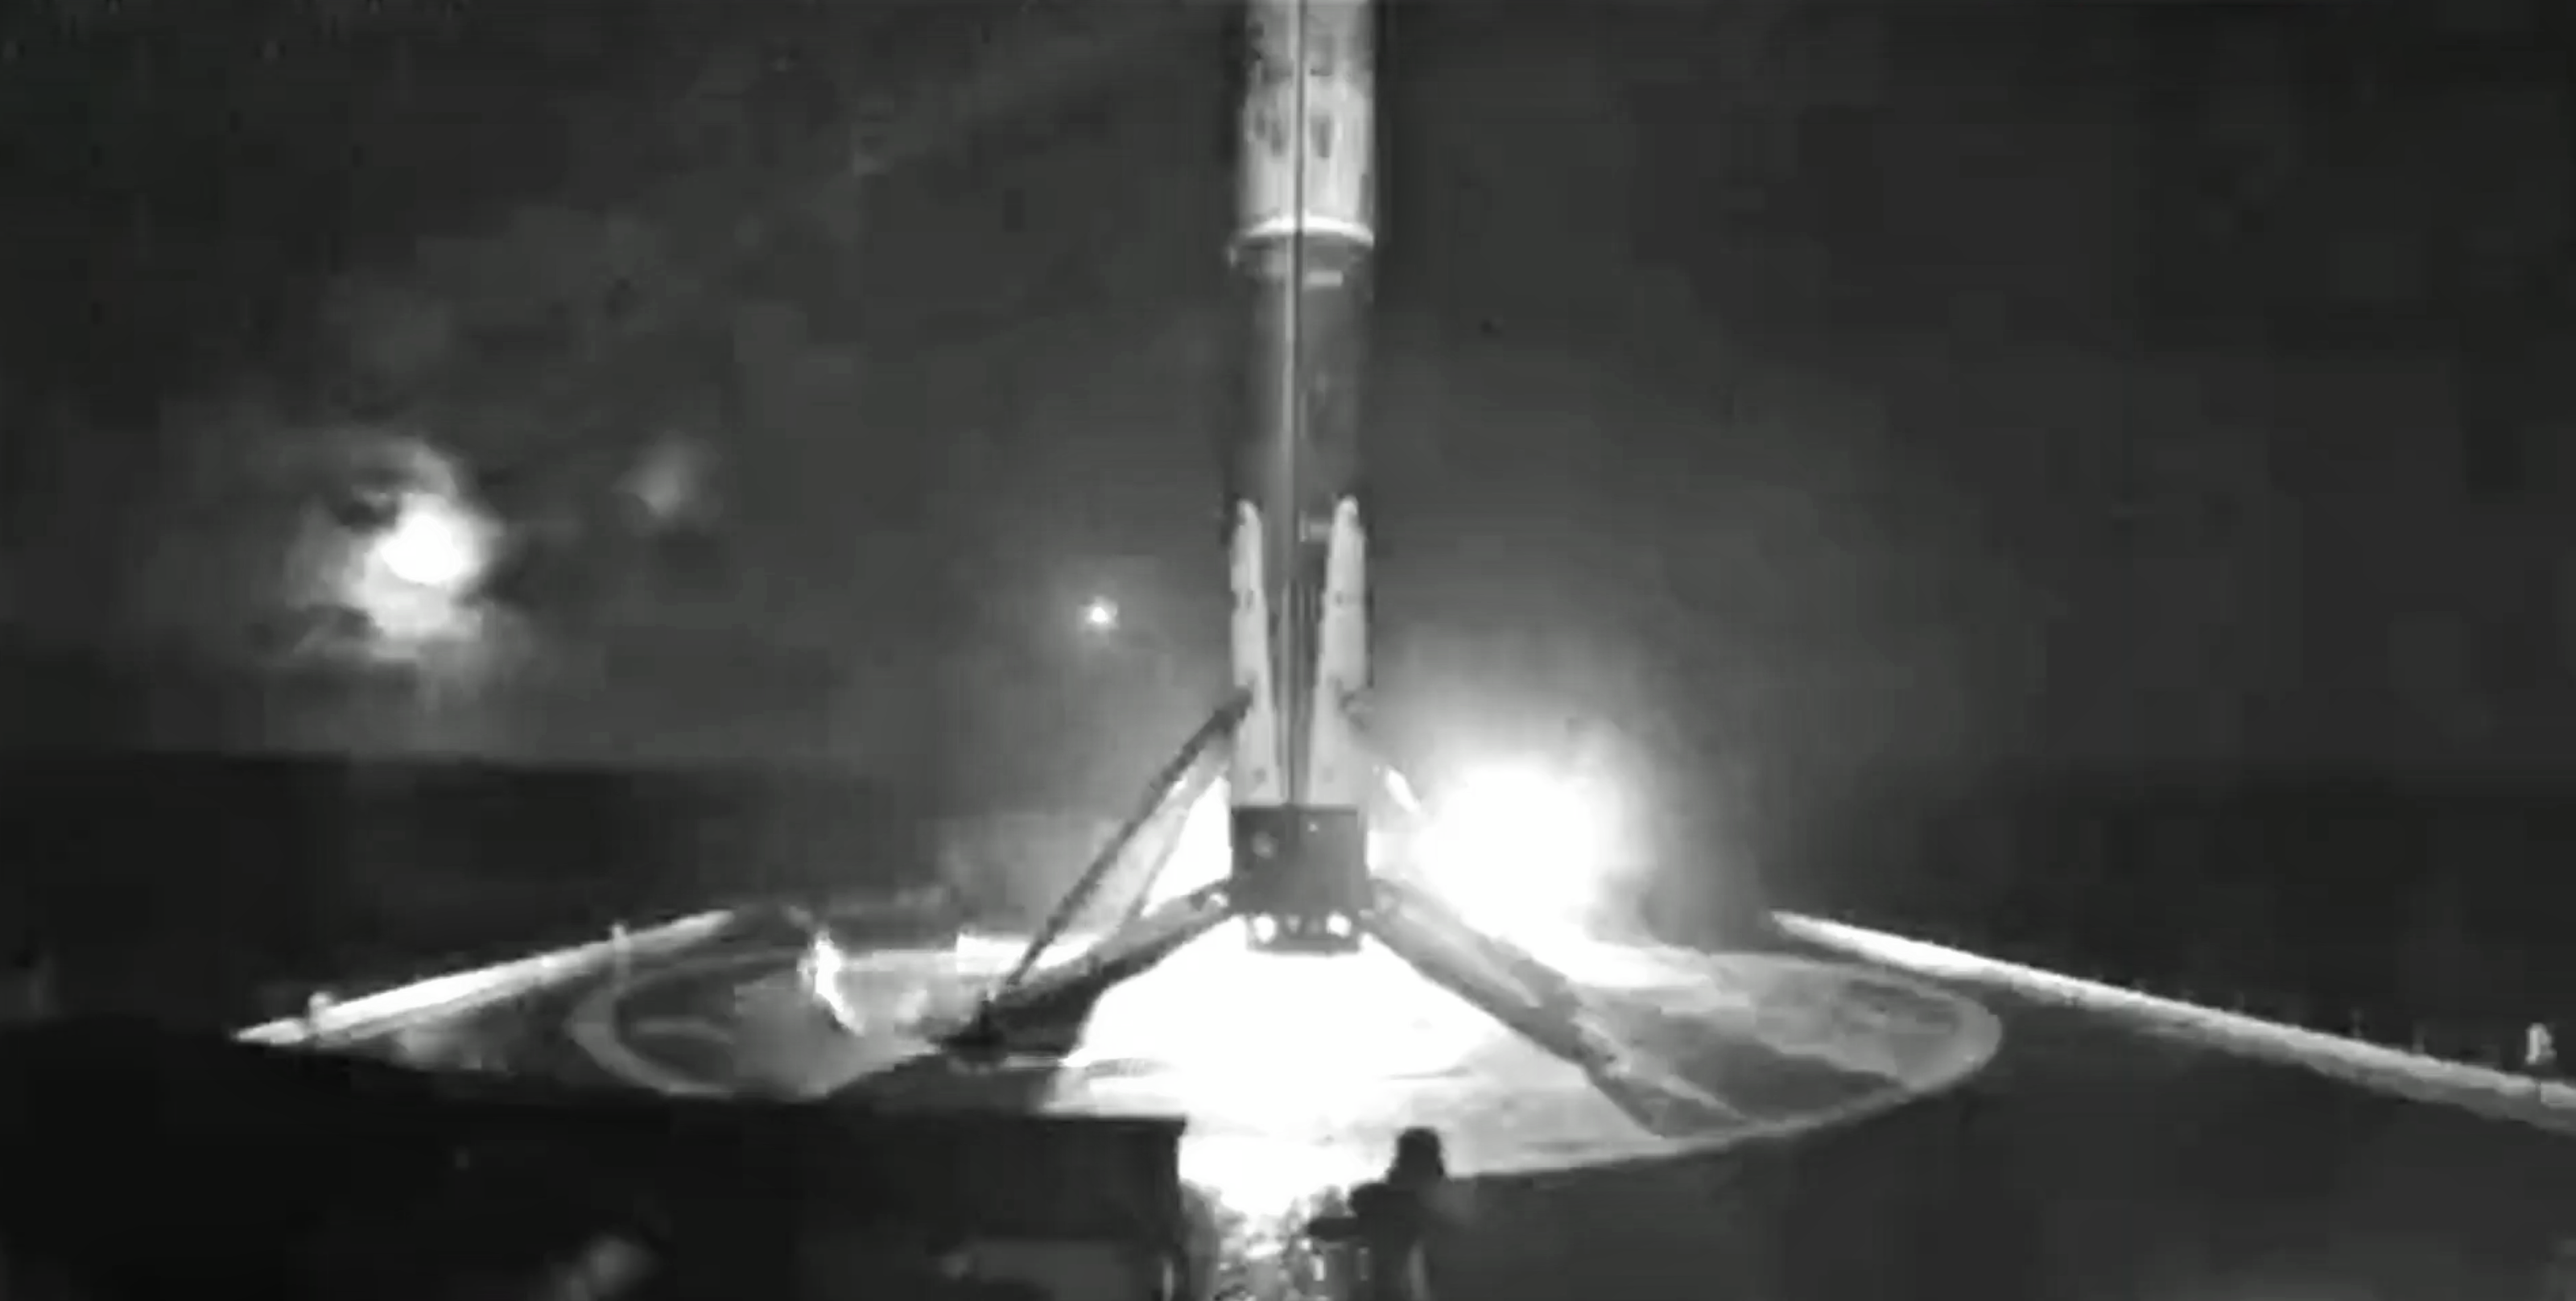 Falcon 9 b1048 PSN-6 webcast (SpaceX) landing 3